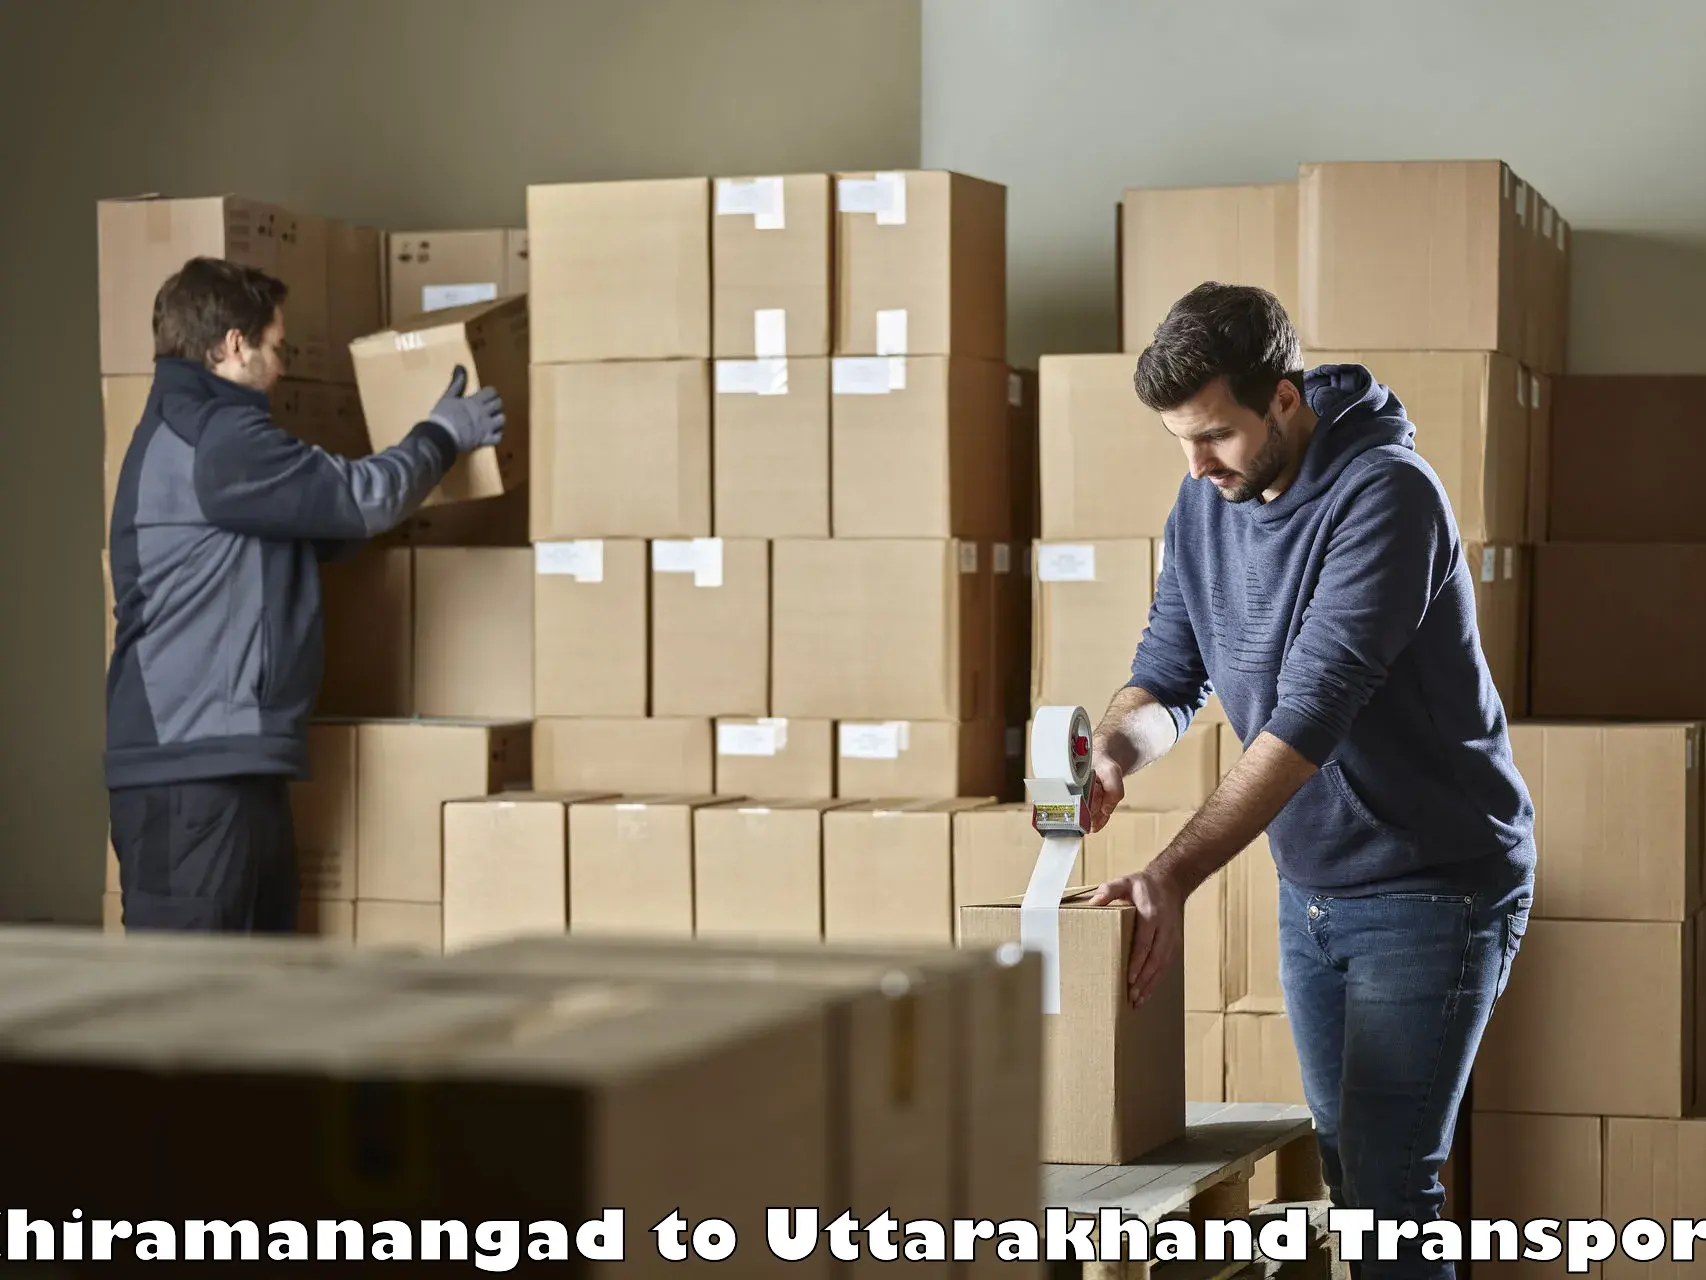 Delivery service Chiramanangad to Nainital